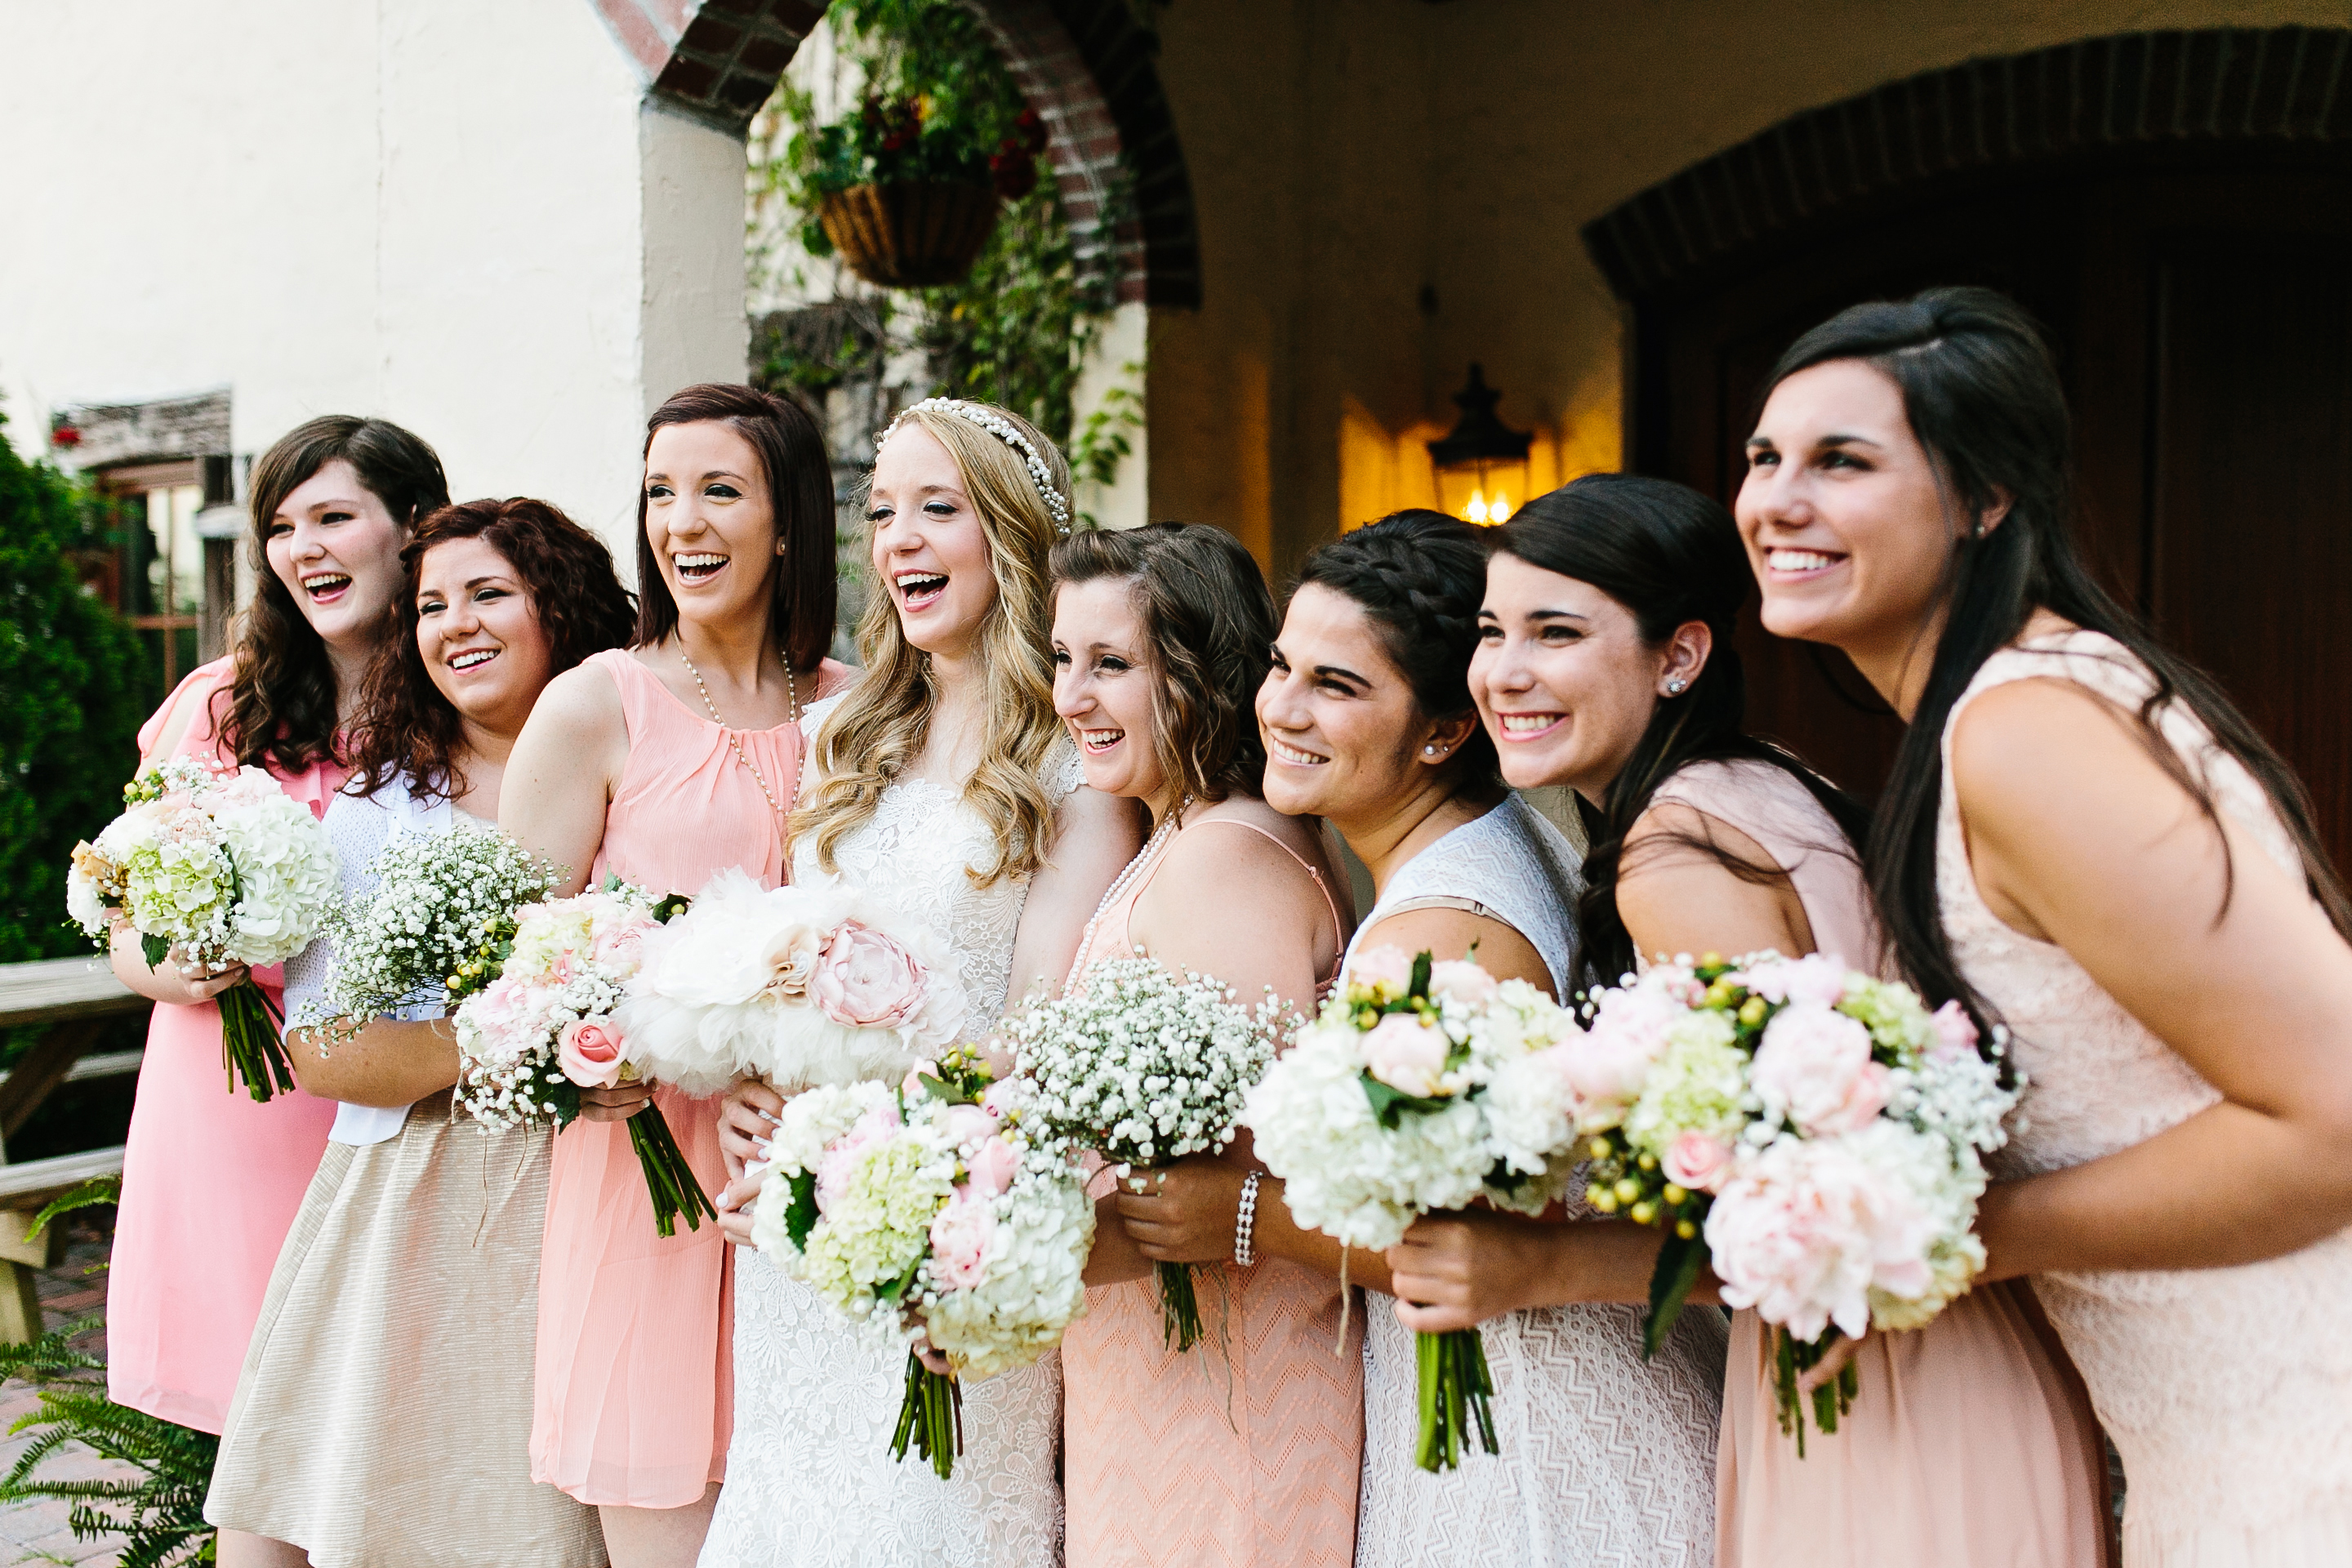 shades of coral bridesmaids dresses. bridesmaids in coral. coral wedding colors. shades of coral wedding. coral wedding. peach wedding colors.